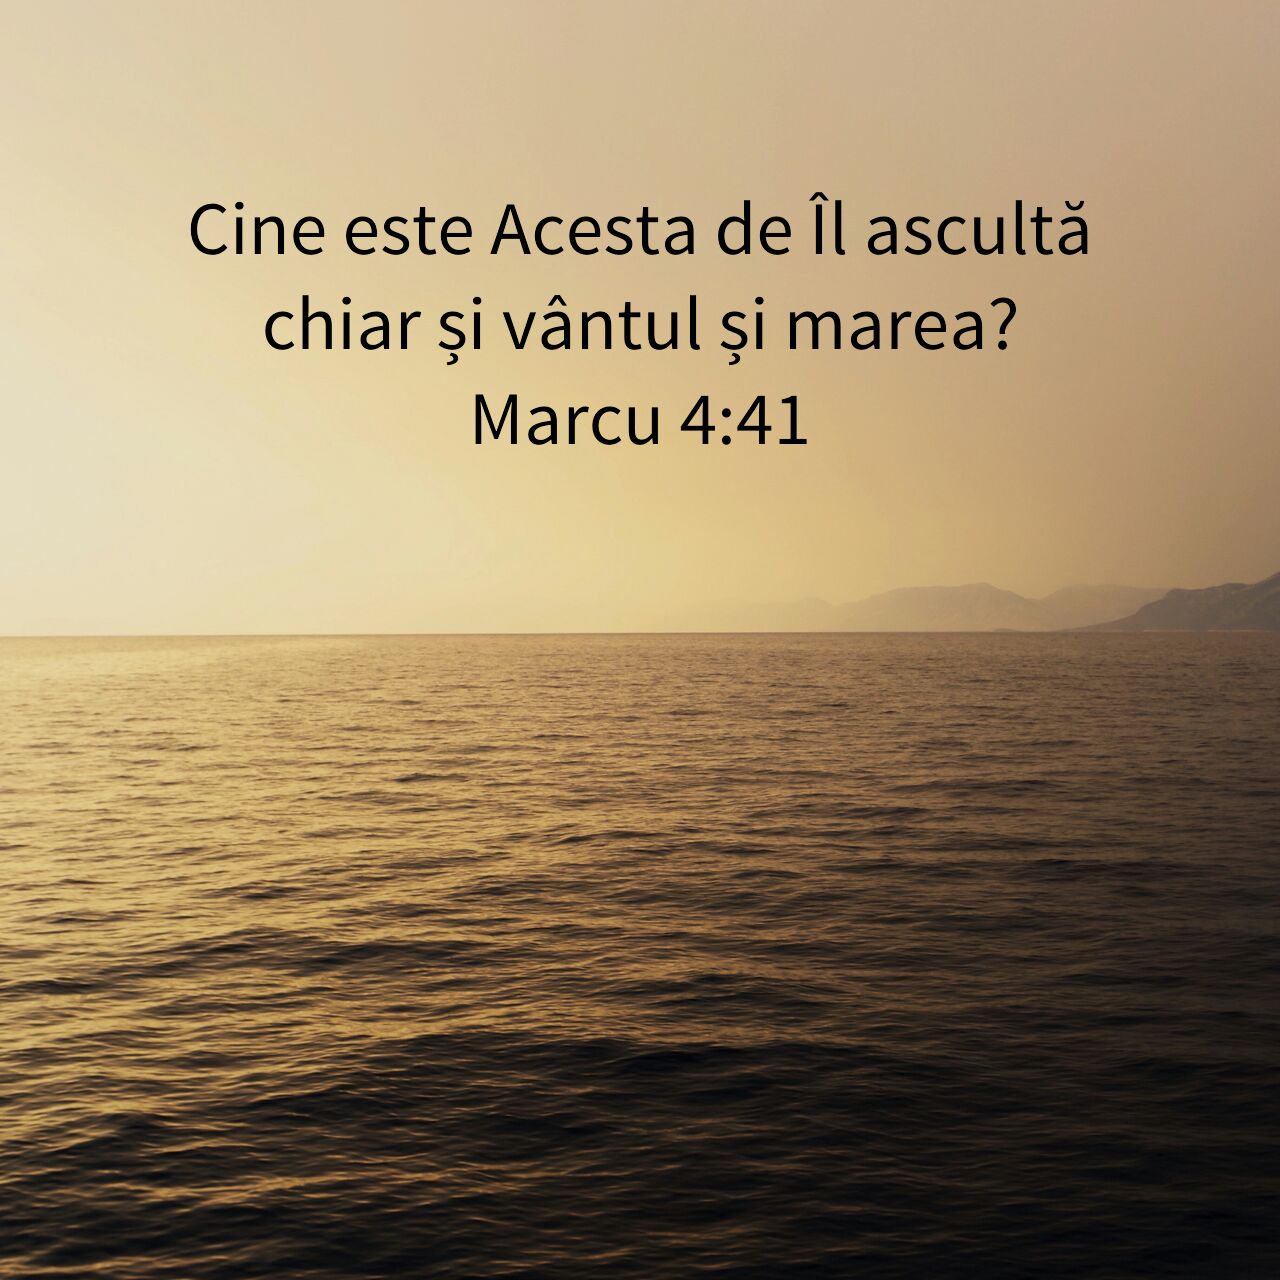 Marcu 4:41